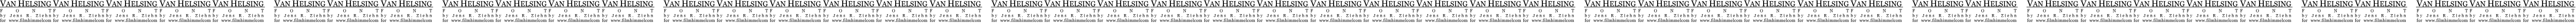 Пример написания шрифтом Van Helsing текста на русском